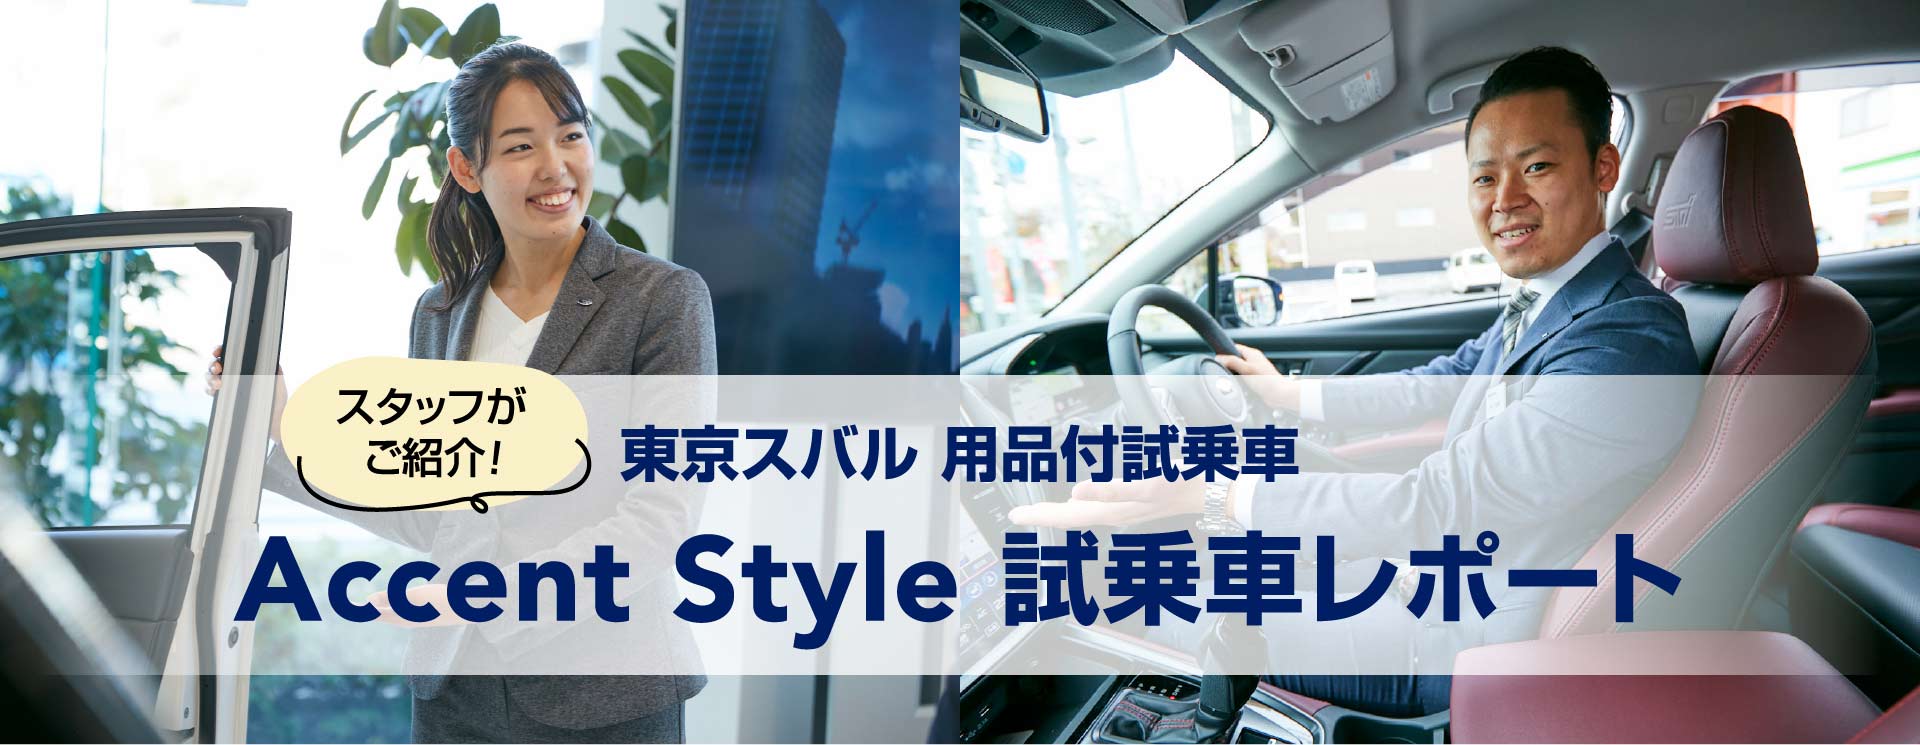 スタッフがご紹介 東京スバル 用品付試乗車 Accent Style 試乗車レポート